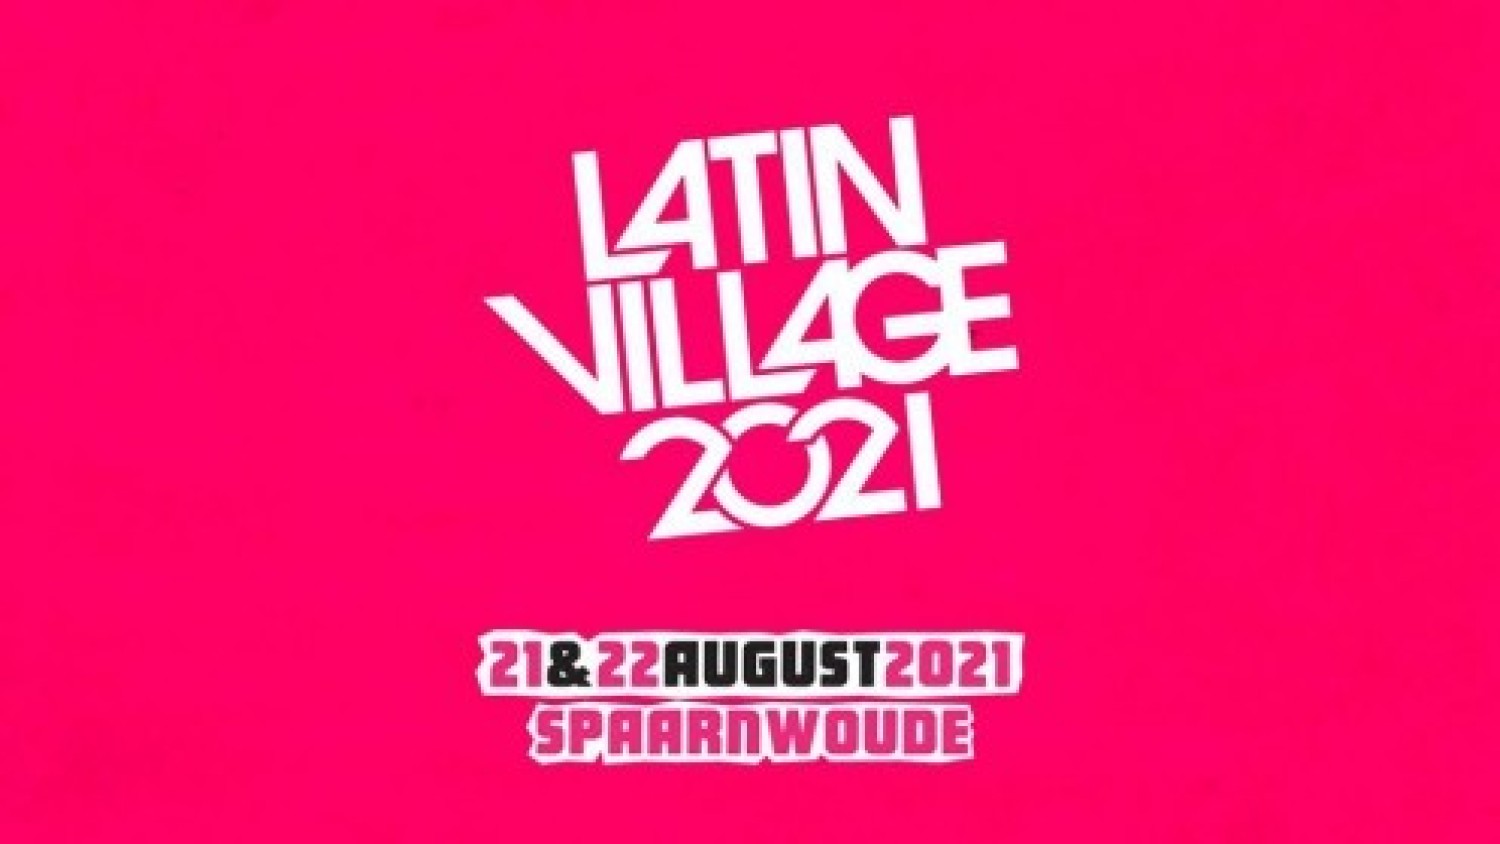 LatinVillage Festival 2021